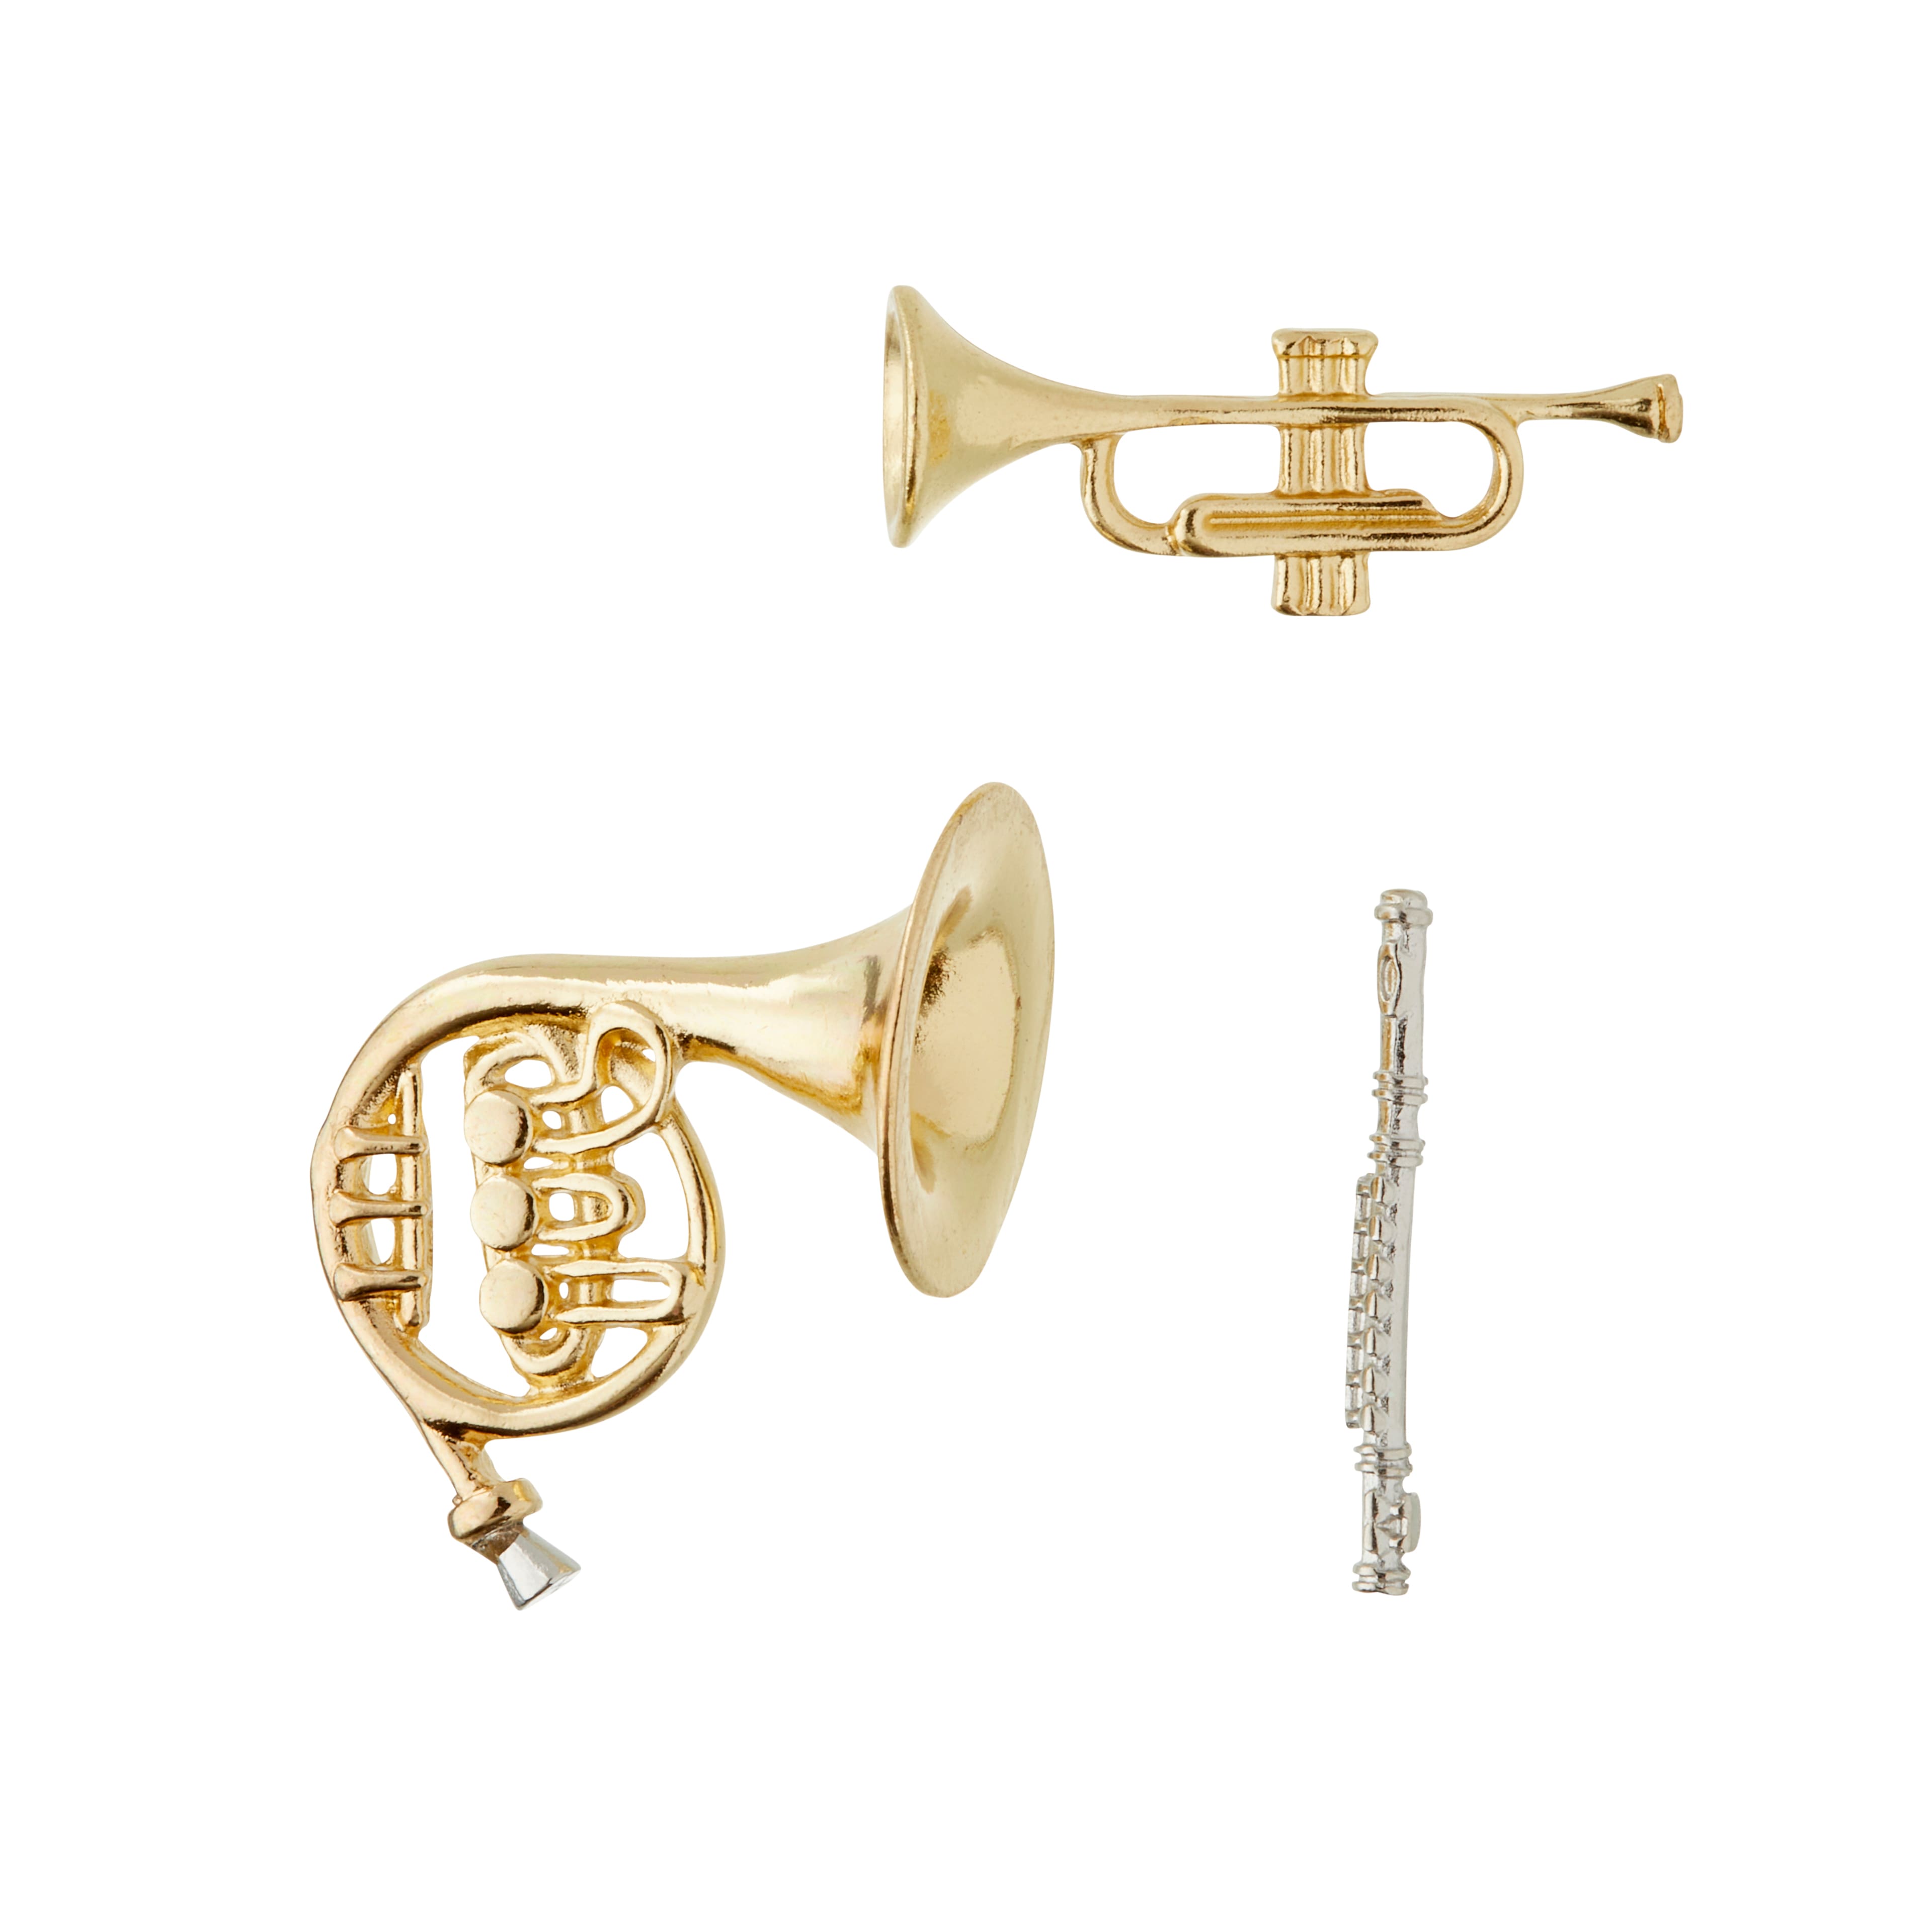 Faites l'achat de ces instruments de musique miniatures d'ArtMinds